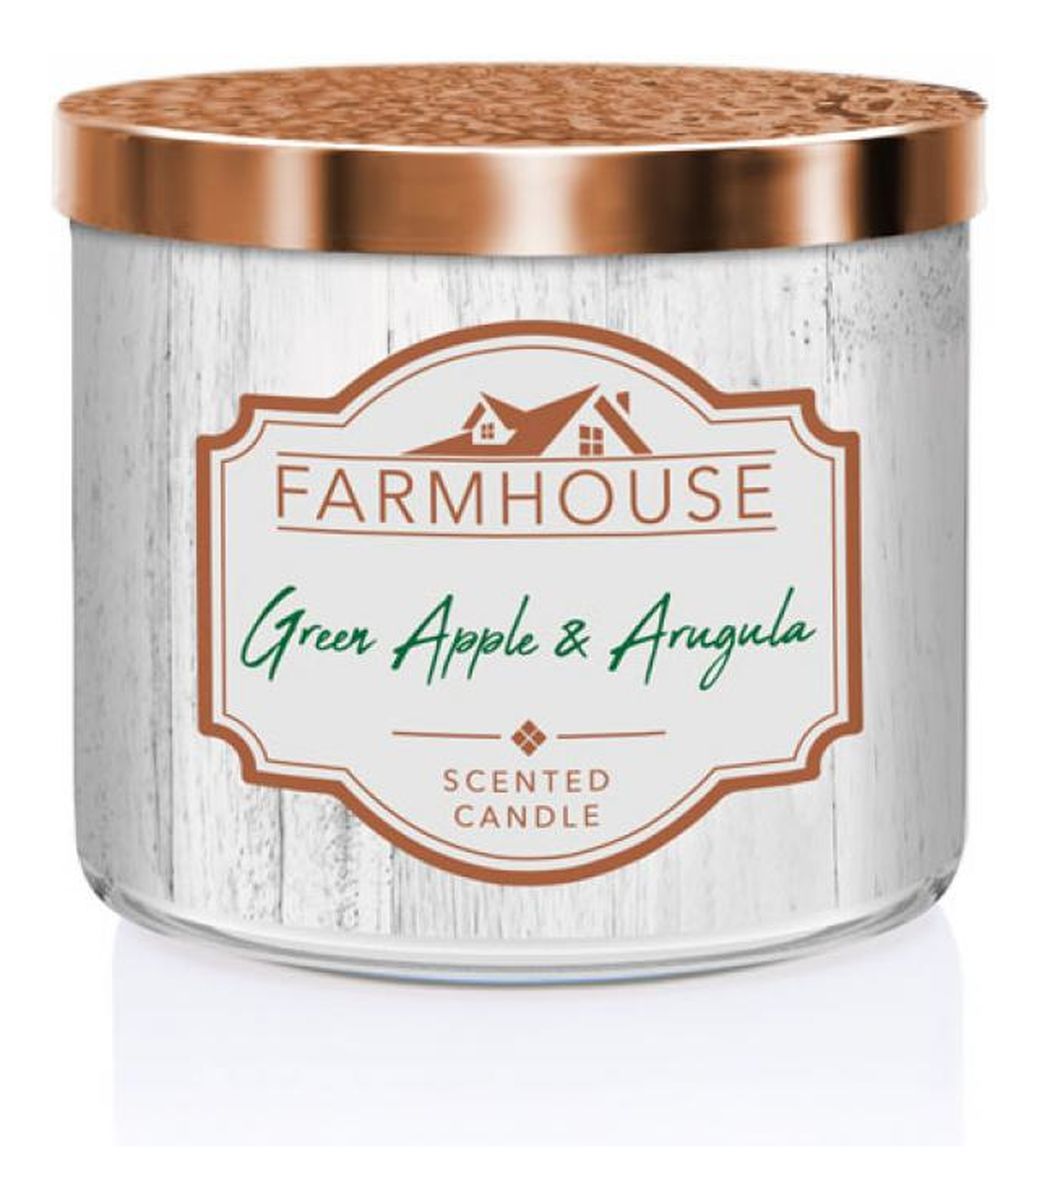 Farmhouse świeca zapachowa z trzema knotami green apple & arugula